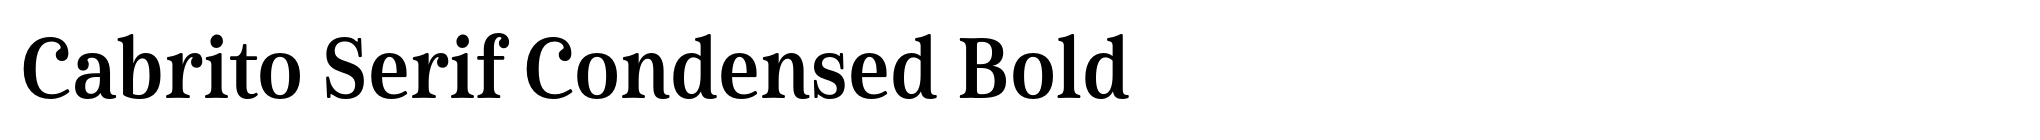 Cabrito Serif Condensed Bold image